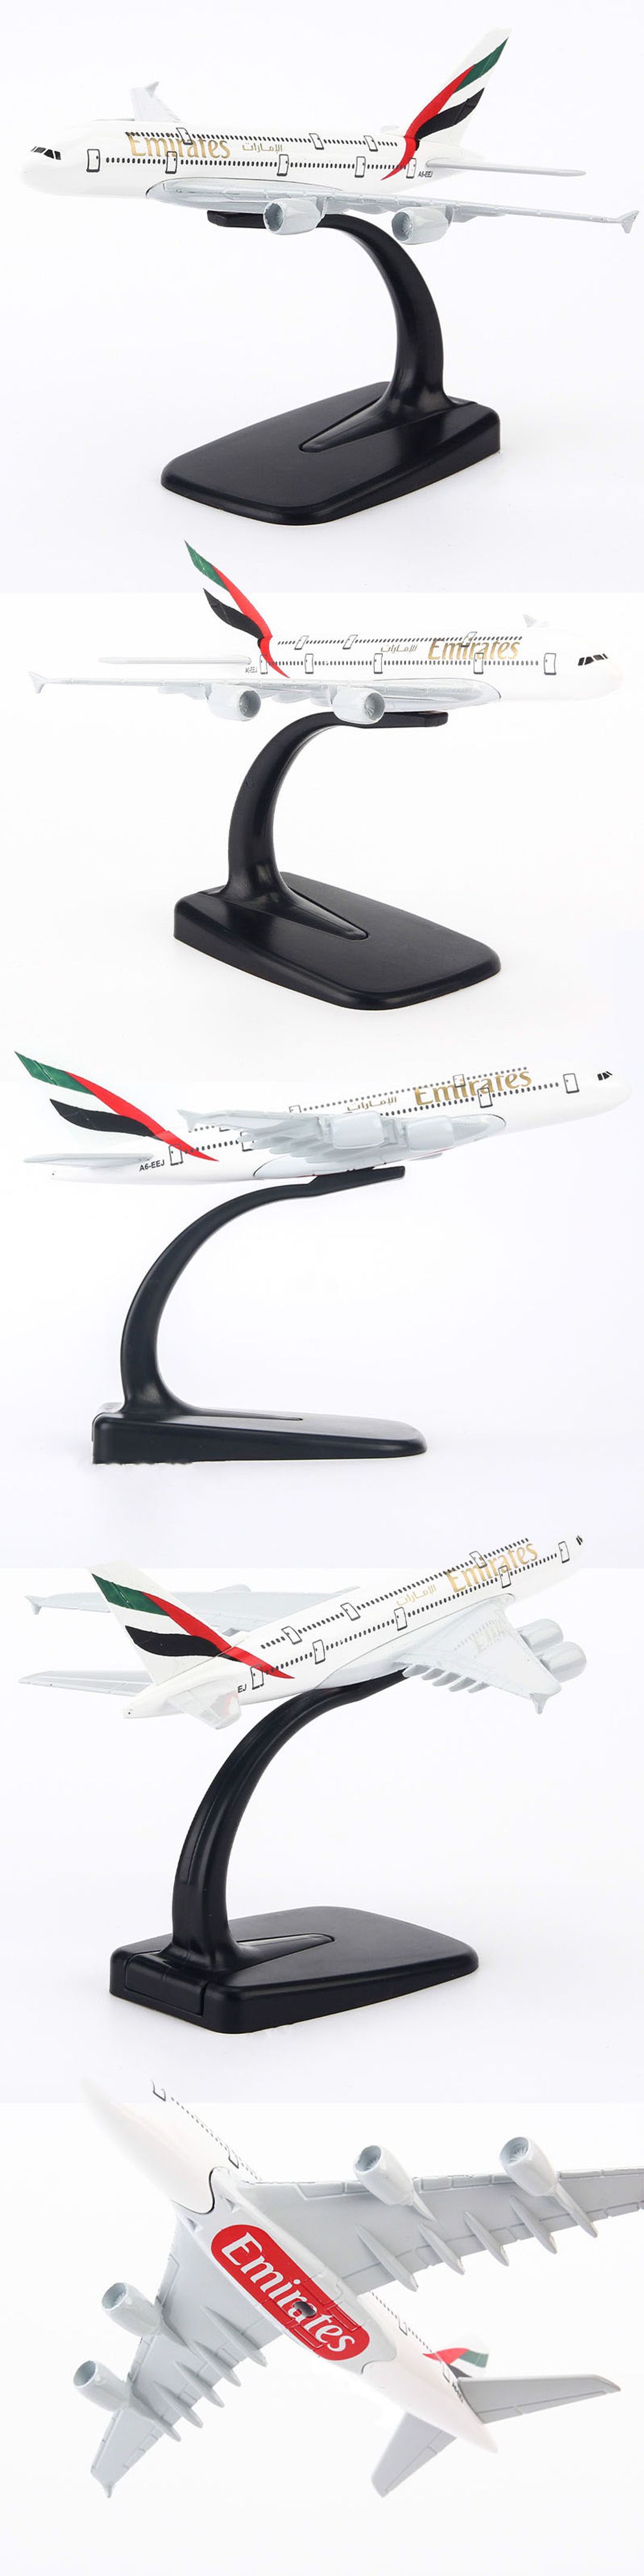 Mô hình máy bay Emirates Airbus A380 16cm